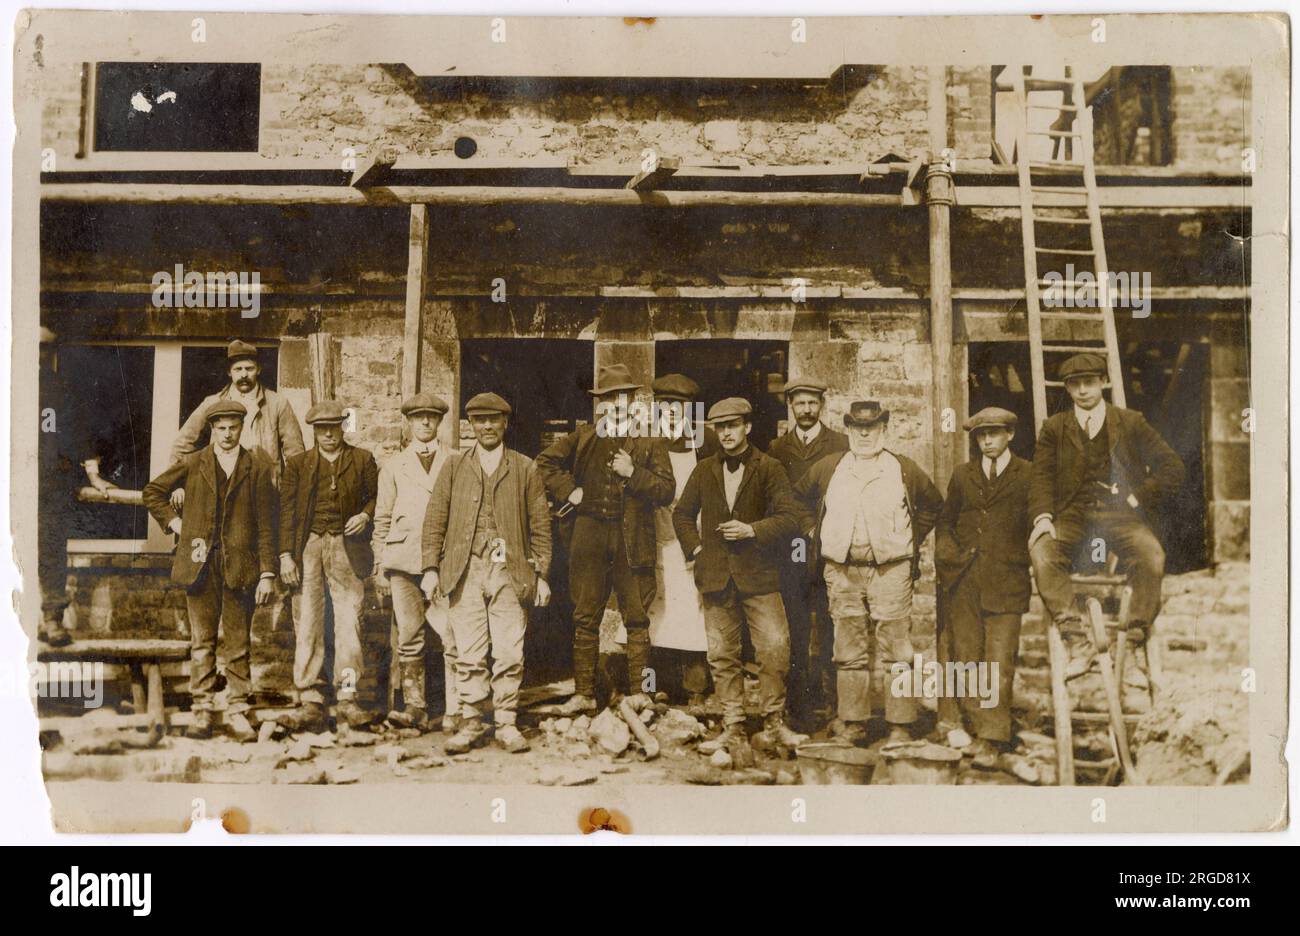 Gruppenfoto einer Gruppe von Männern vor einem teilweise errichteten Haus. Beachten Sie den älteren Herrn von rechts, dessen Kleidung etwa auf 1870er/1880er datiert. Stockfoto